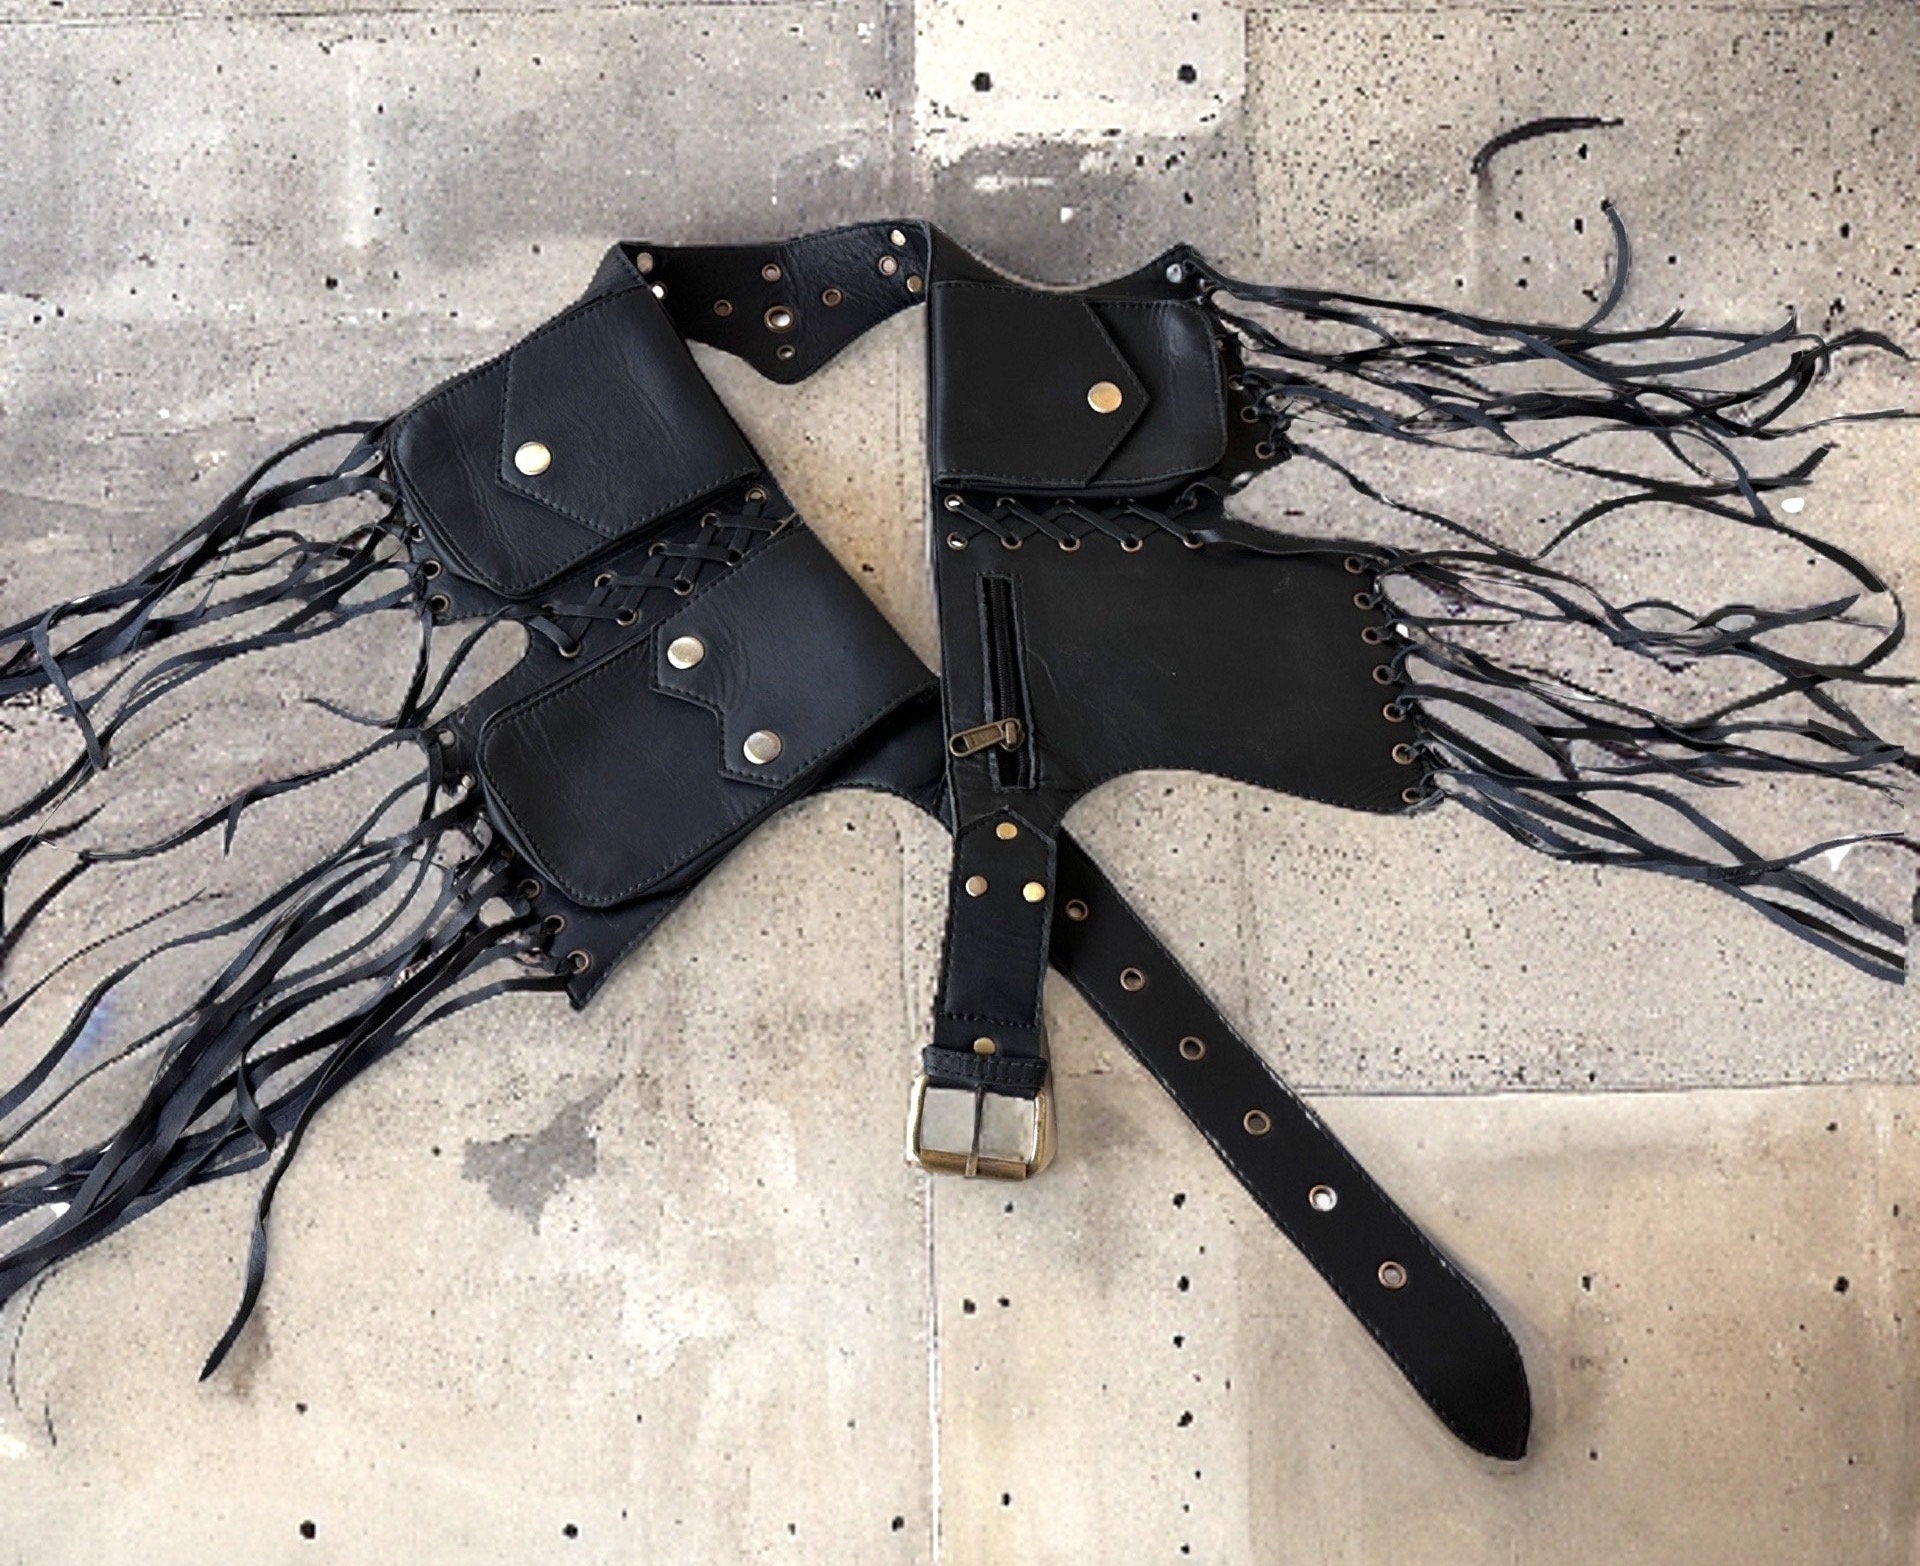 UPDATED Genuine Leather Utility Belt | Black Tassels, 5 pockets | fanny pack travel belt, festival, party purse, vendor belt, money belt